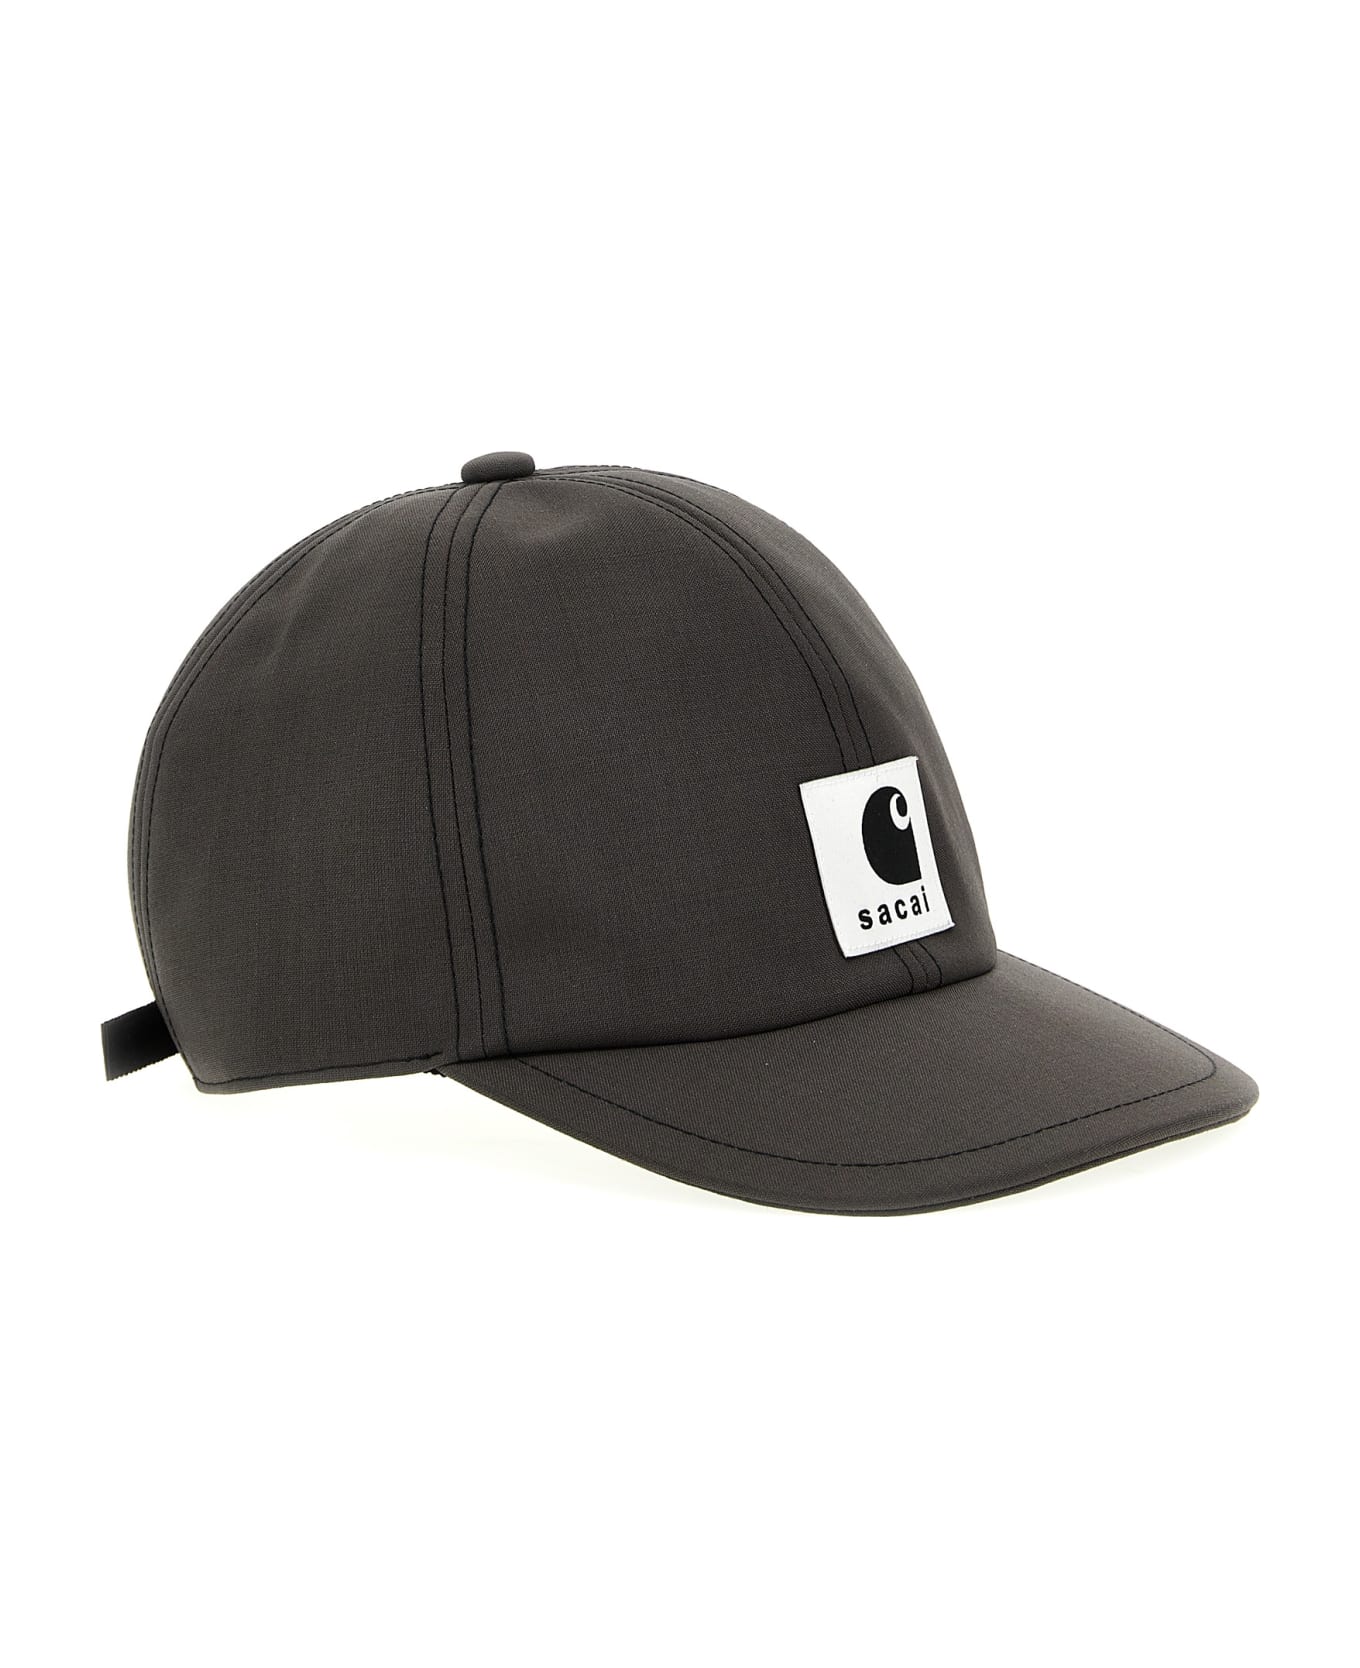 Sacai X Carhartt Wip Cap - Gray 帽子